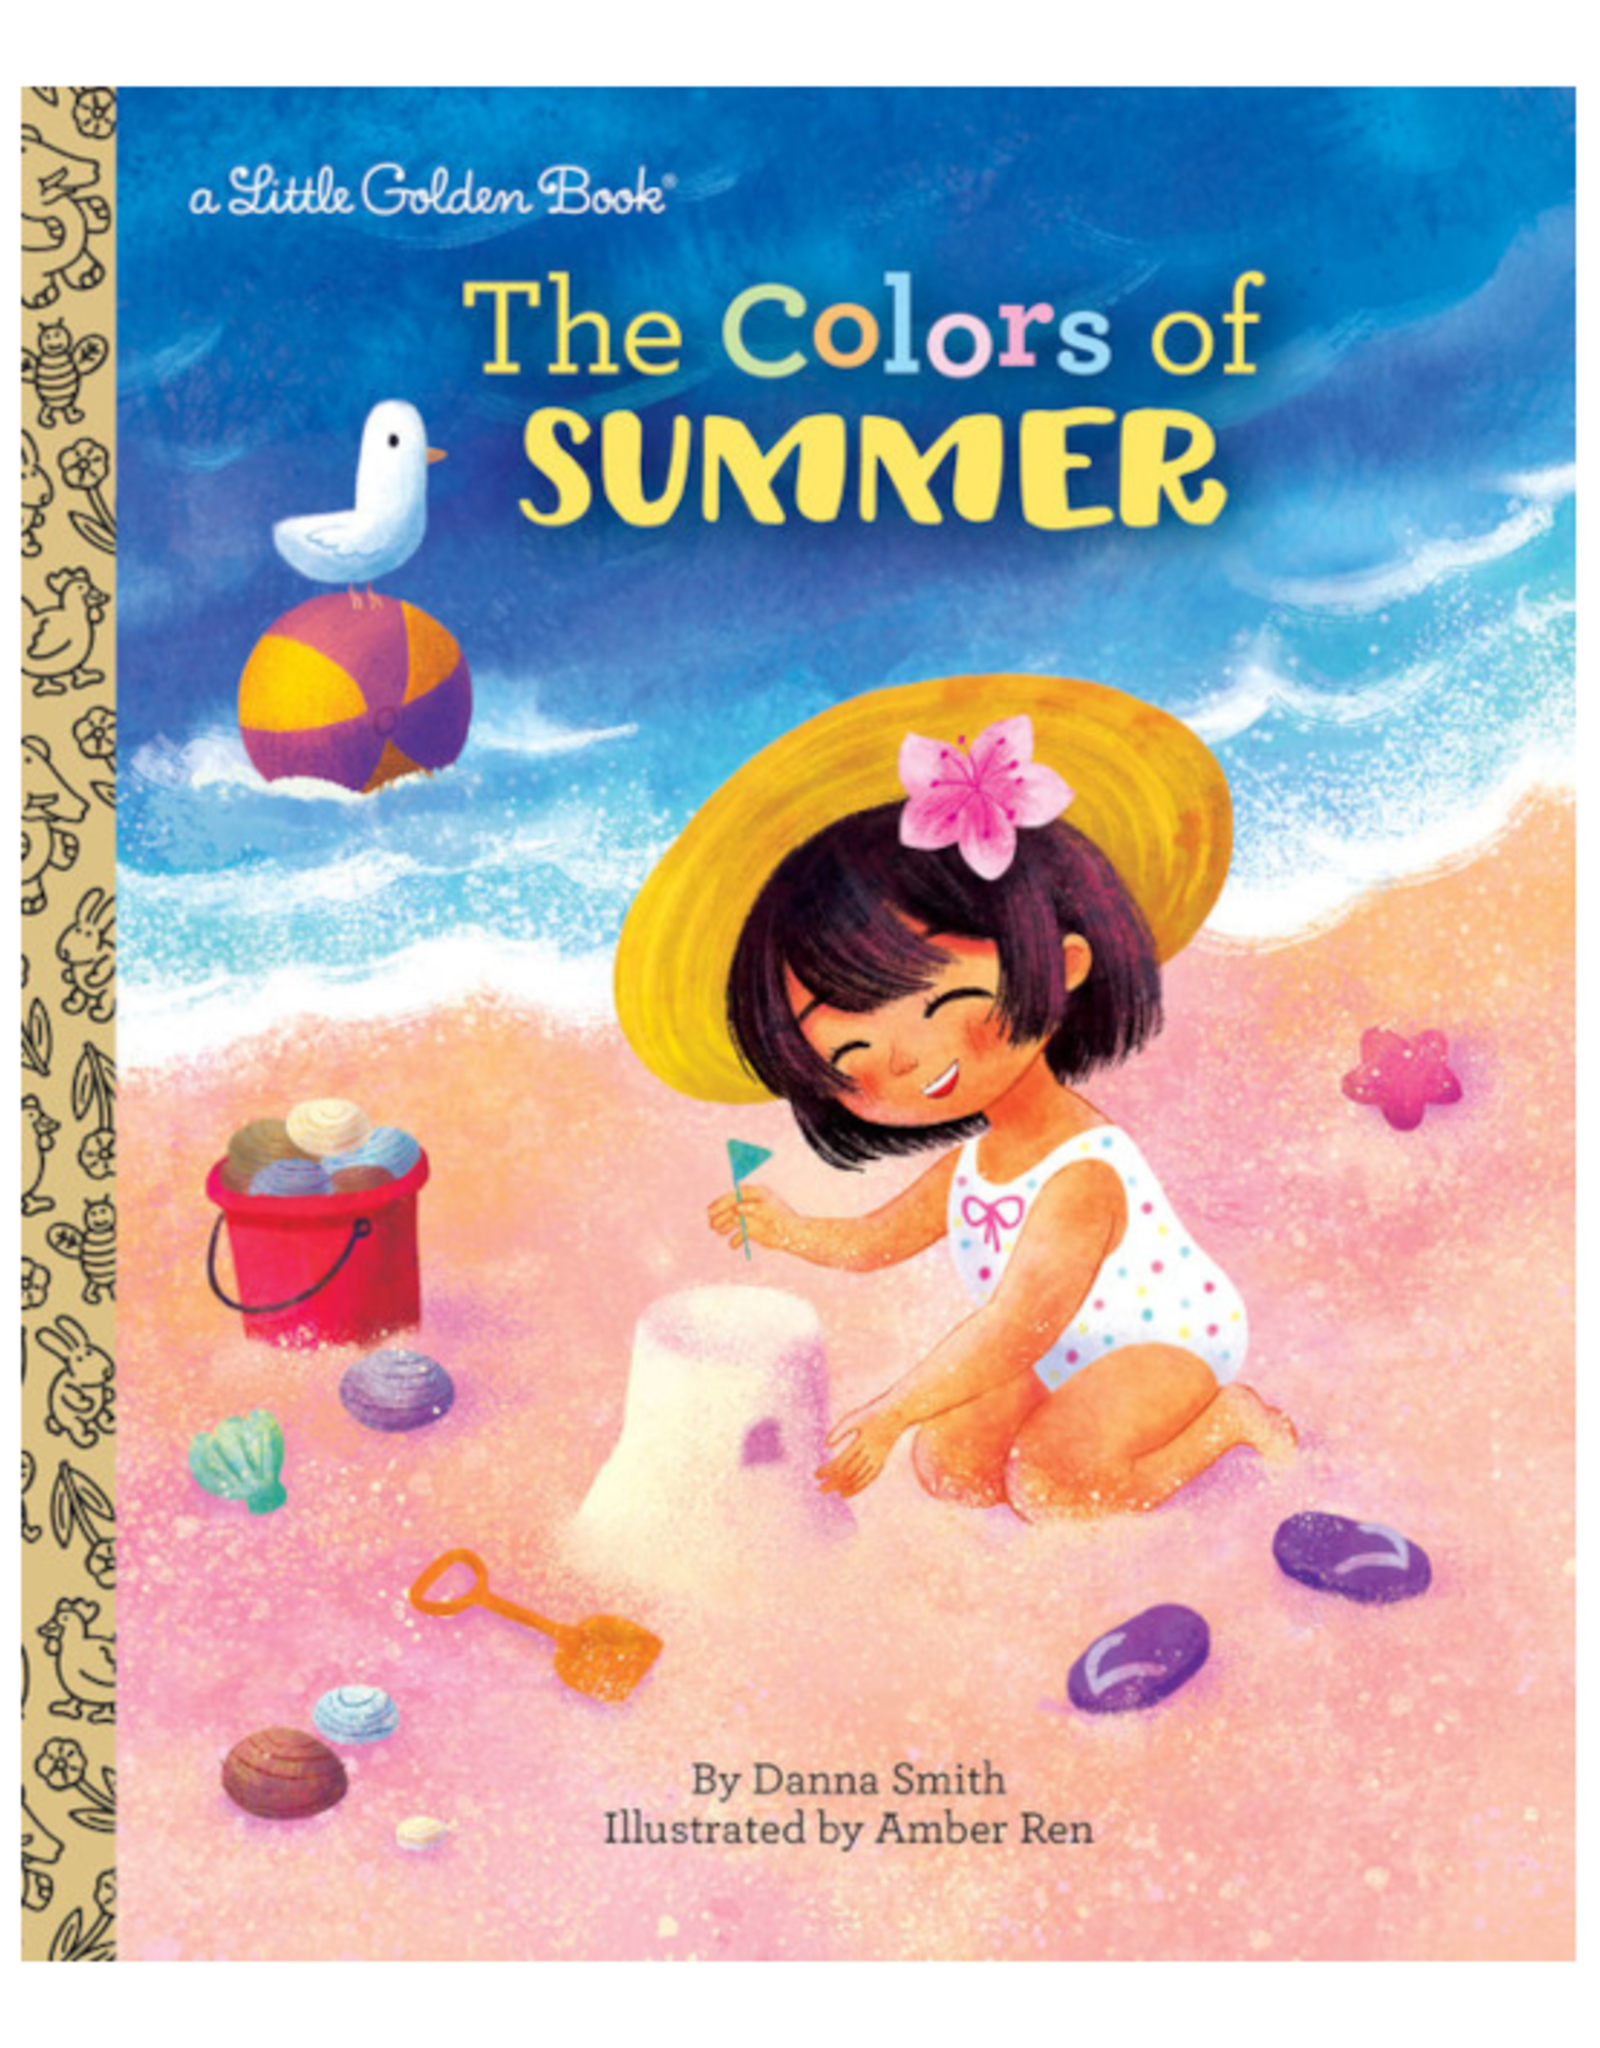 Little Golden Books Little Golden Book - The Colors of Summer